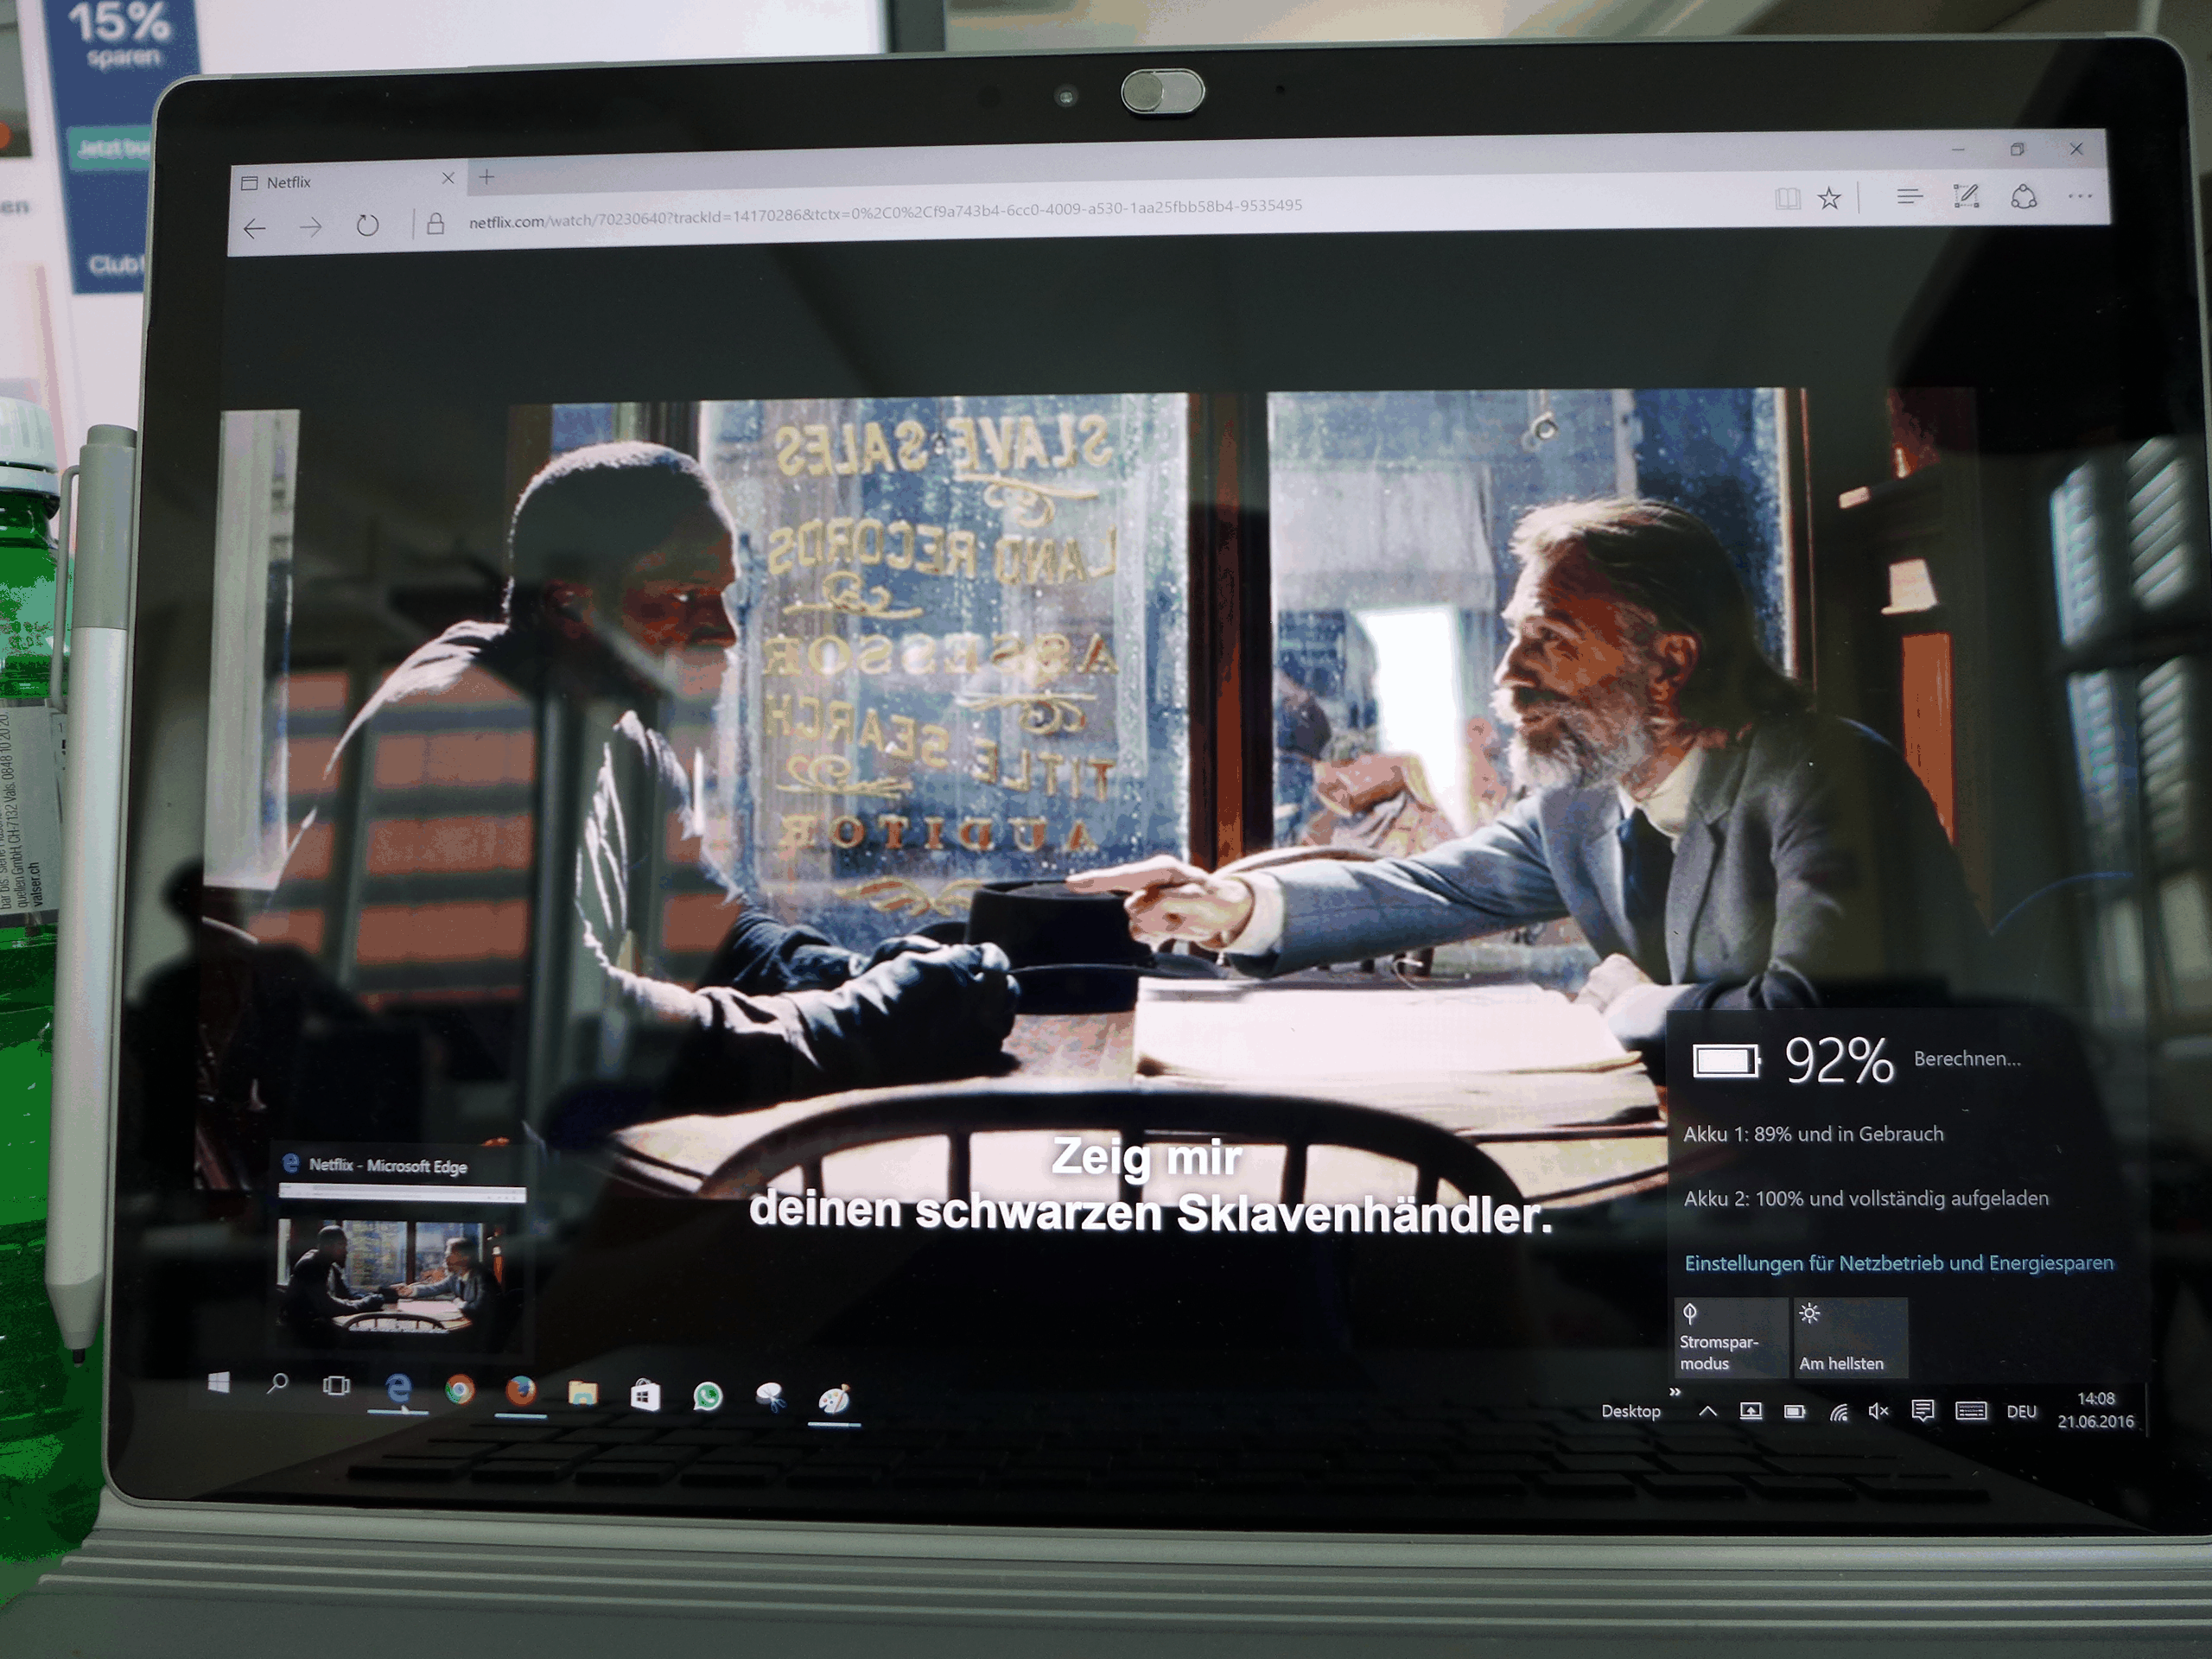 Edge hat nach 60 Minuten Film-Streaming 8% Akku verbraucht. Mit Microsofts Edge könnte man etwa 12 Stunden und 30 Minuten Netflix streamen.&nbsp;Hinweis: Netflix verhindert wohl aus Urheberrechtsgründen im neuen Edge das Erstellen von Screenshots. Deshalb haben wir den Bildschirm abfotografiert.